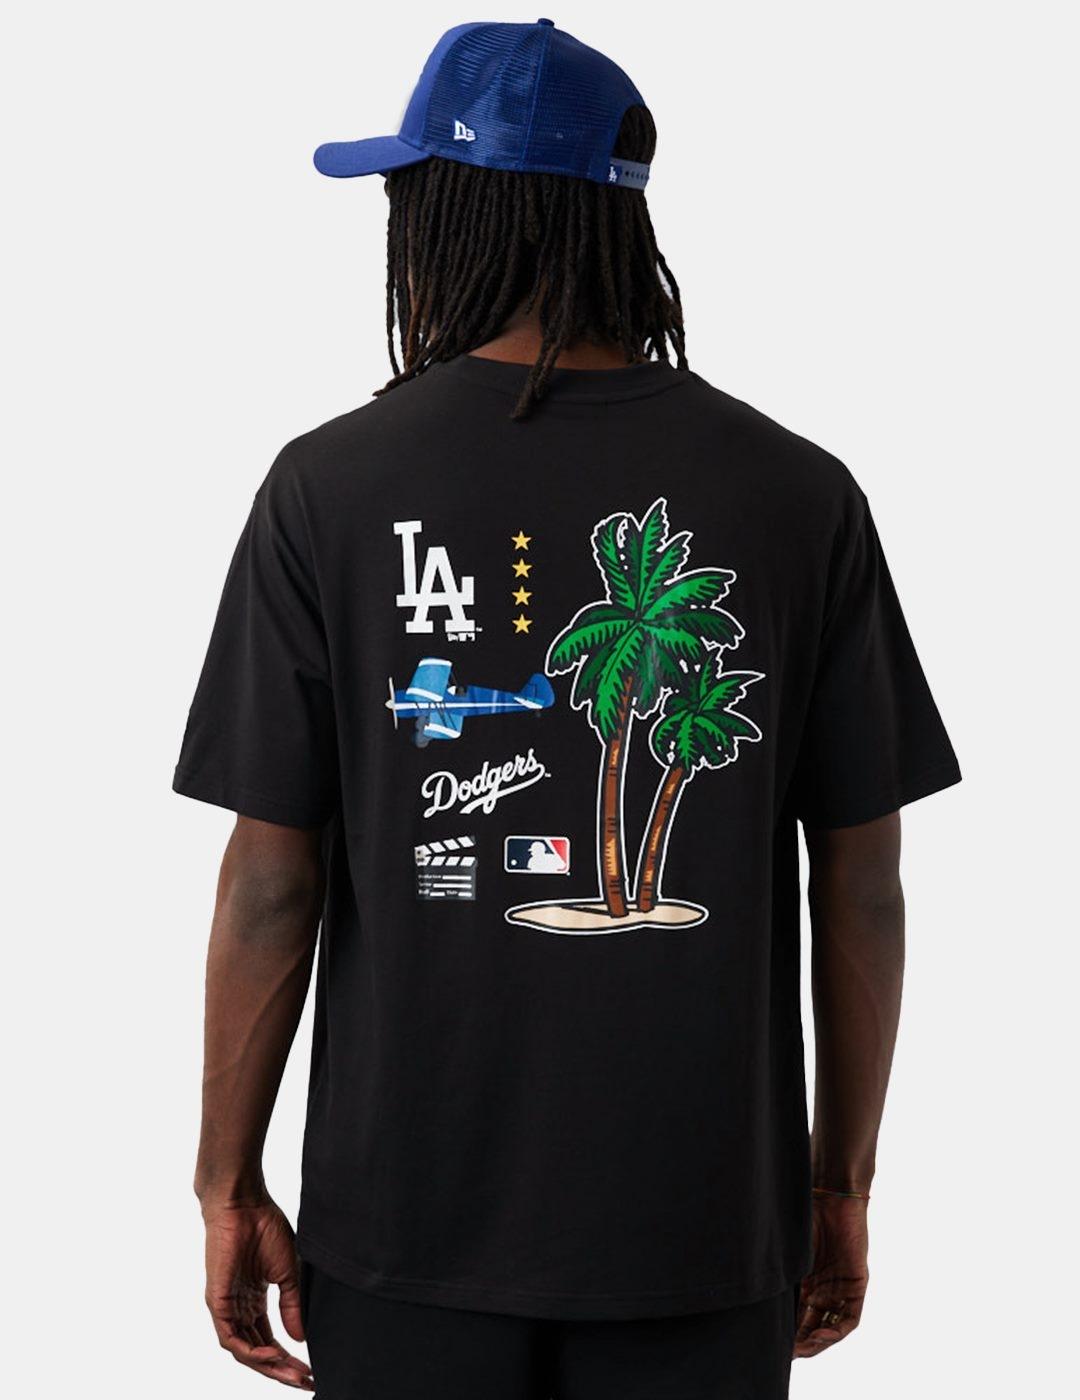 Camiseta New Era Mlb City Oversized Dodgers Negro